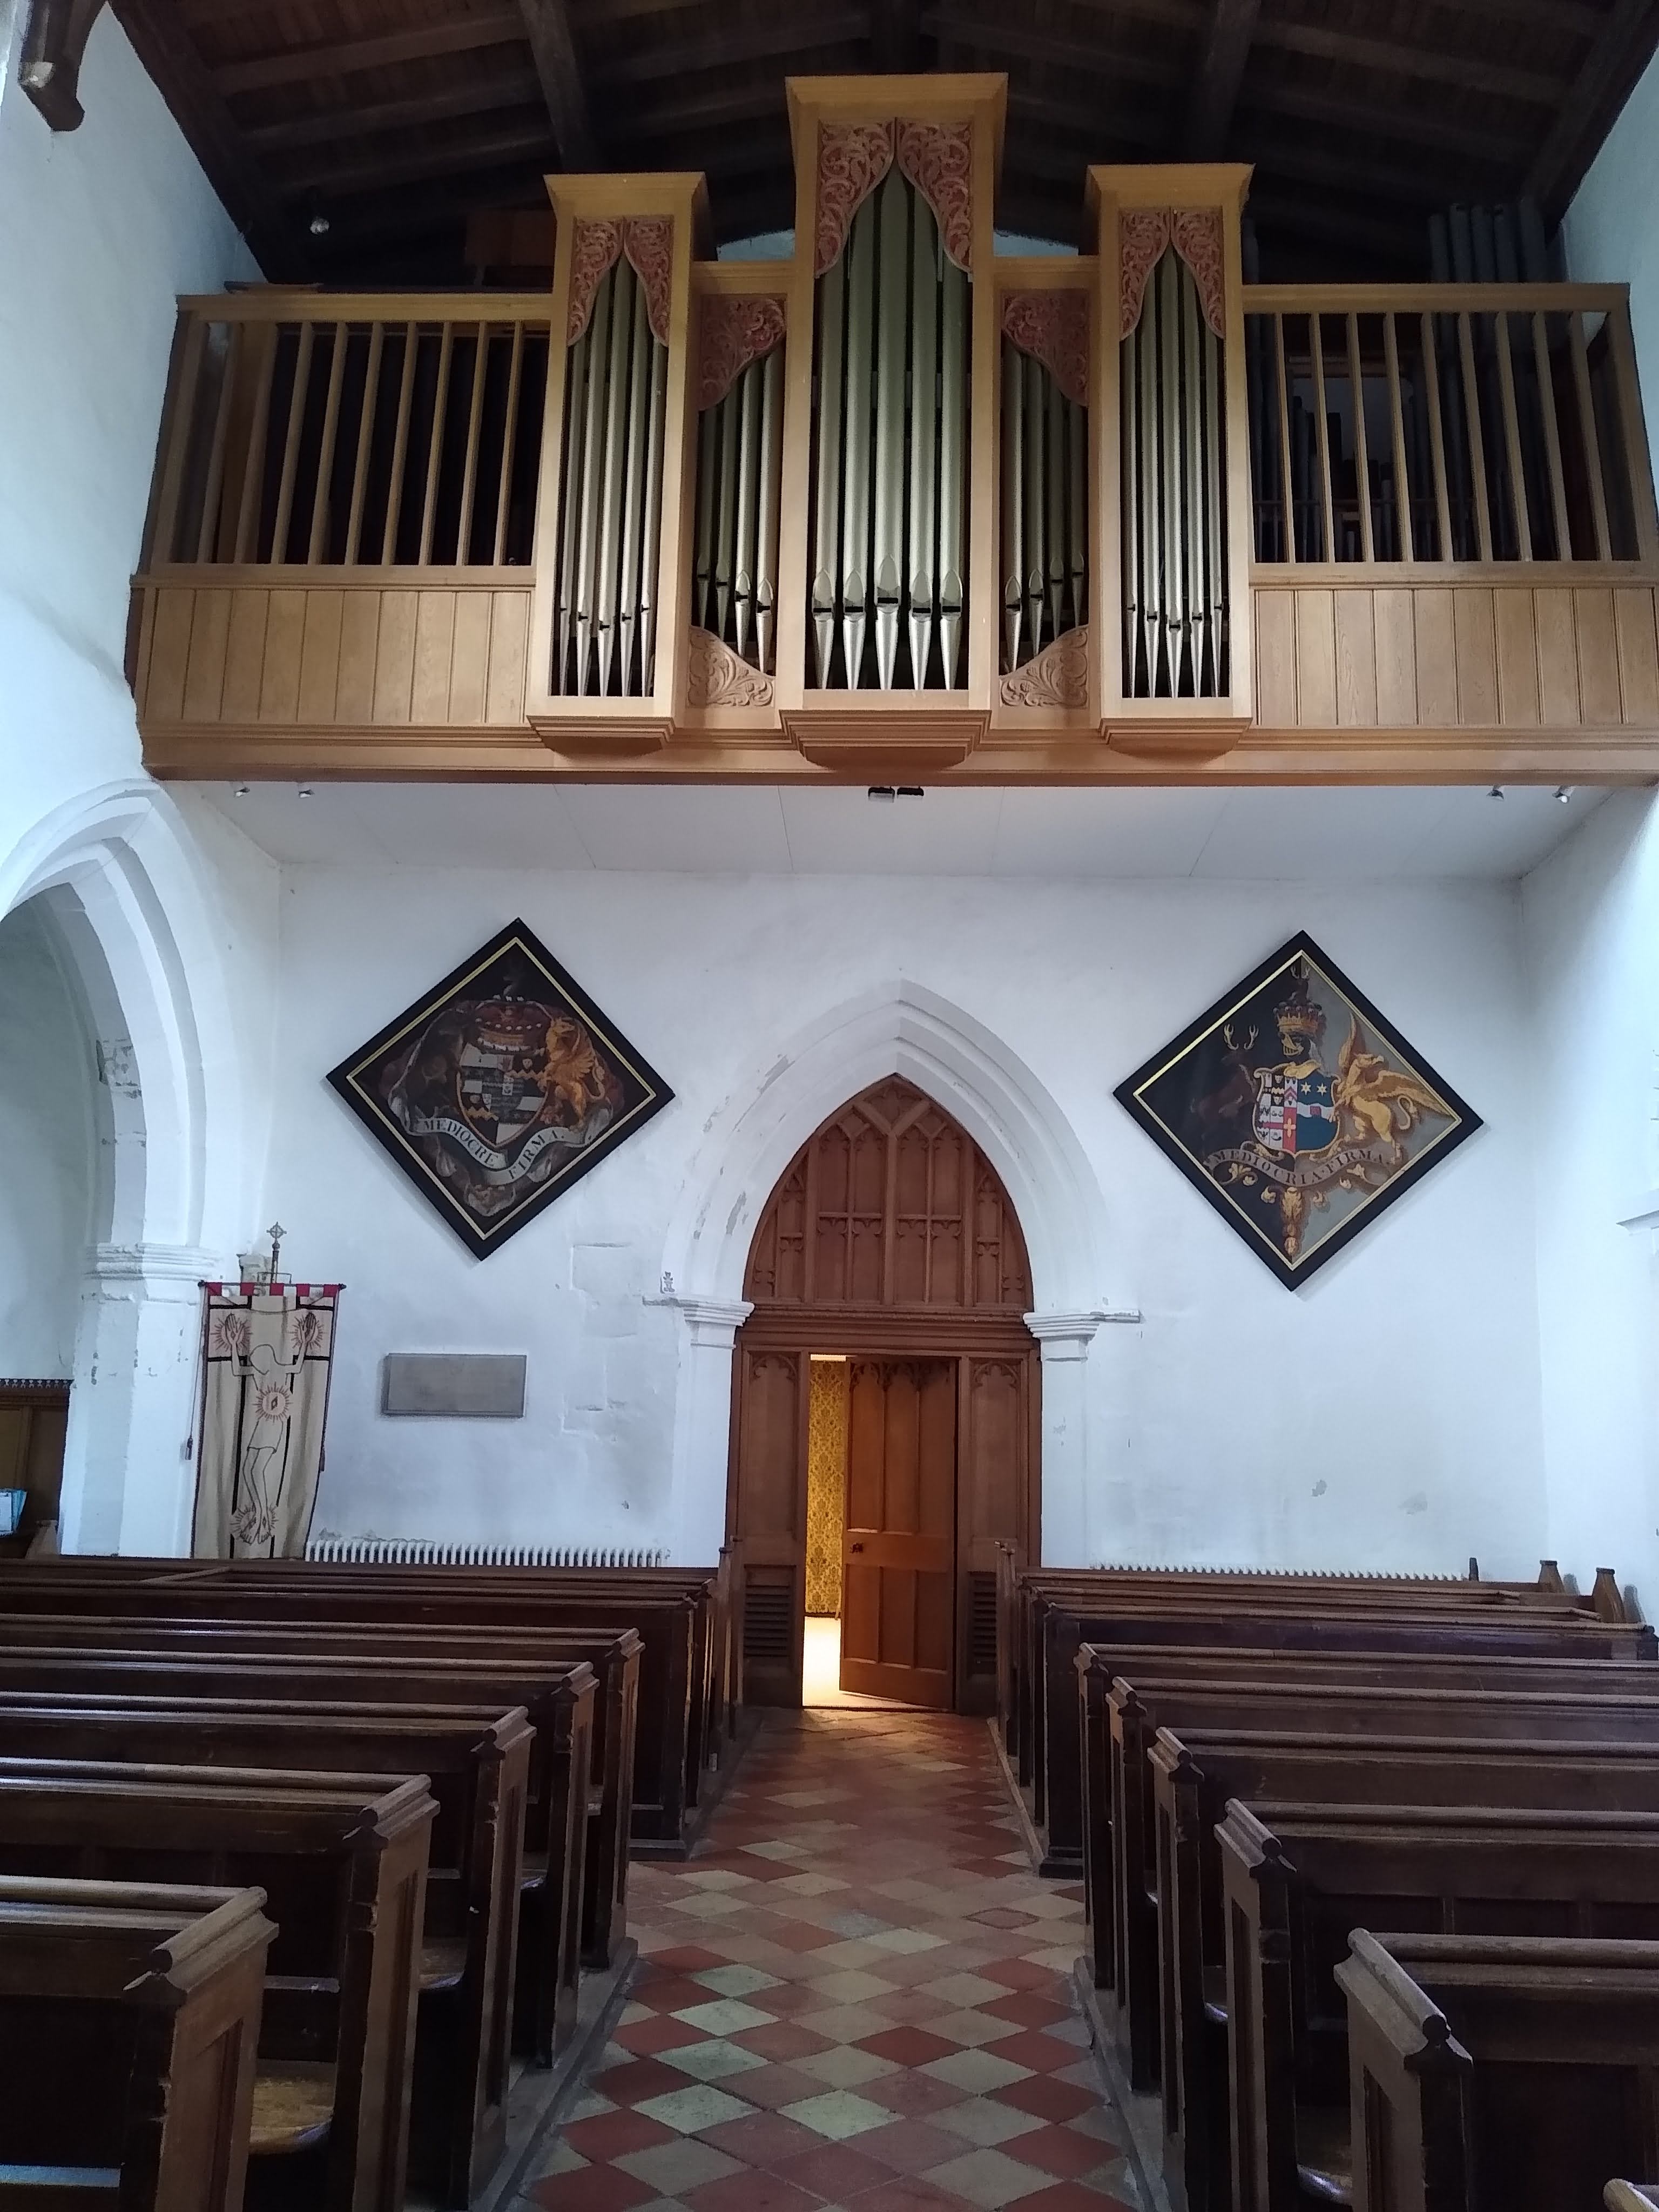 Image: Organ pipes at Redbourn